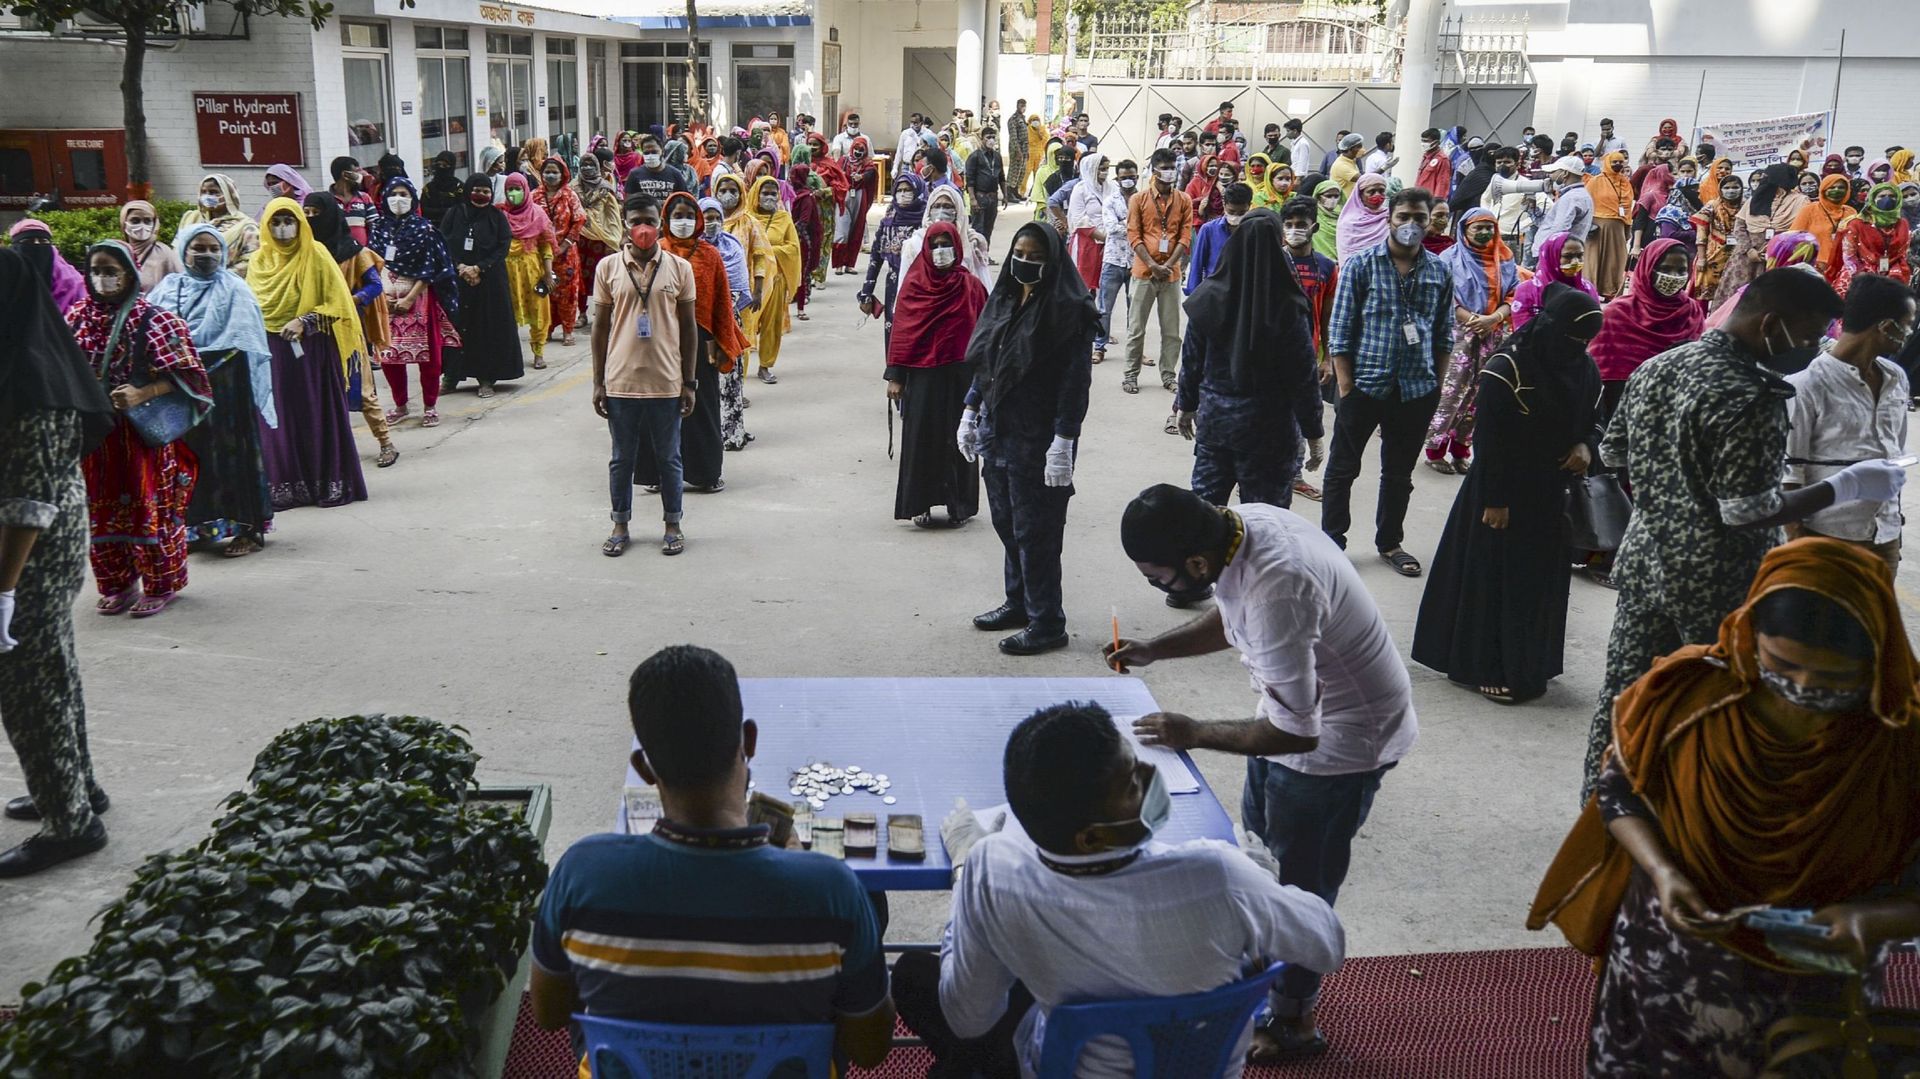 Des ouvriers font la queue pour toucher leur salaire dans une usine de confection pendant le lockdown imposé par le gouvernement à titre de mesure préventive contre le coronavirus COVID-19 à Savar, dans la banlieue de Dhaka, la capitale du Bangladesh, le